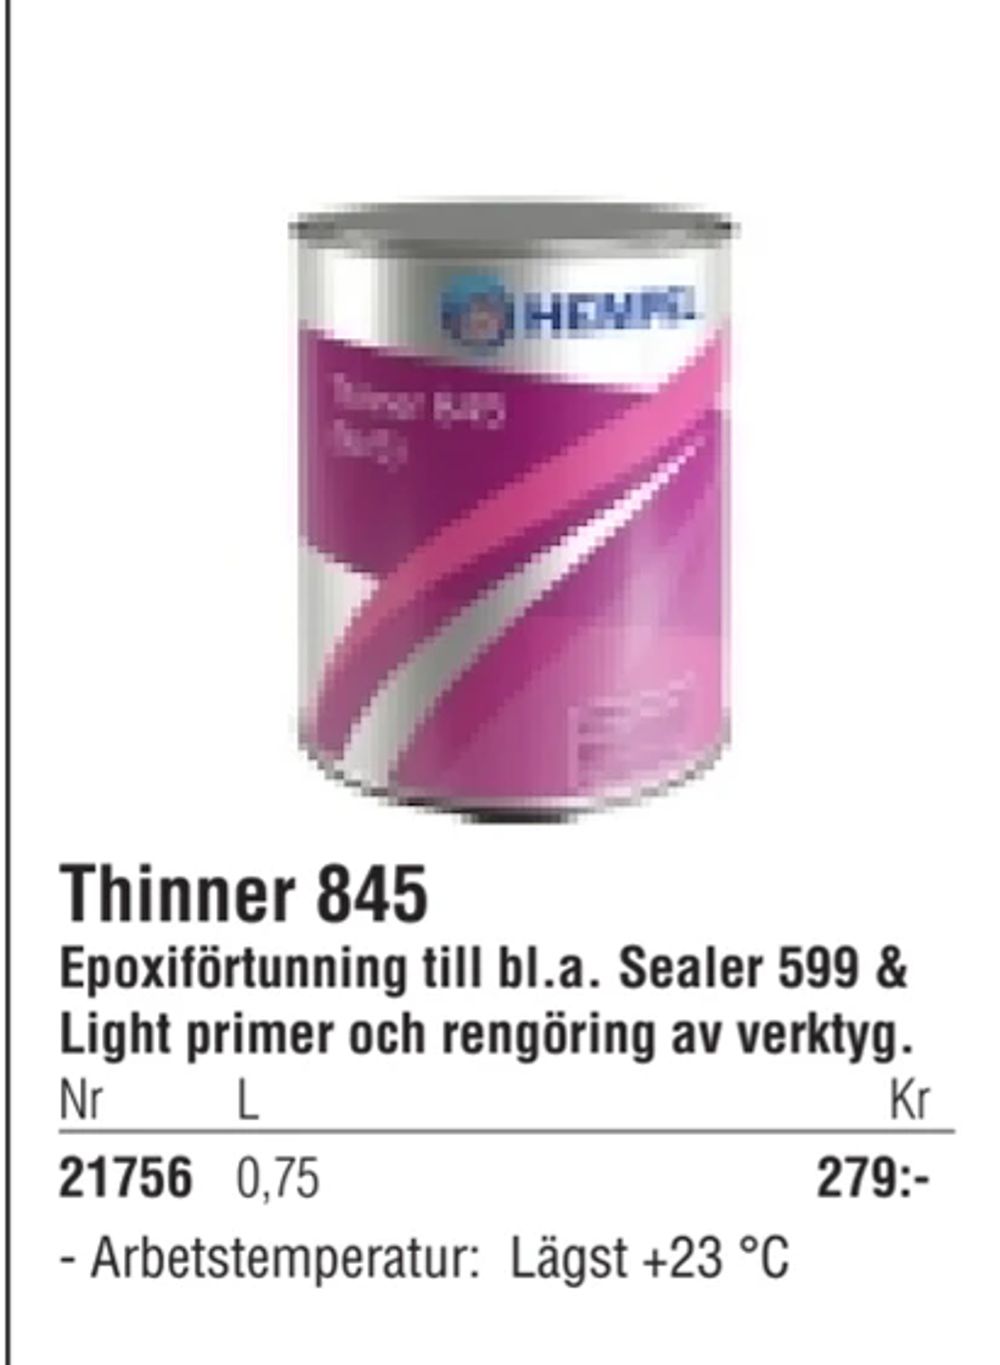 Erbjudanden på Thinner 845 från Erlandsons Brygga för 279 kr